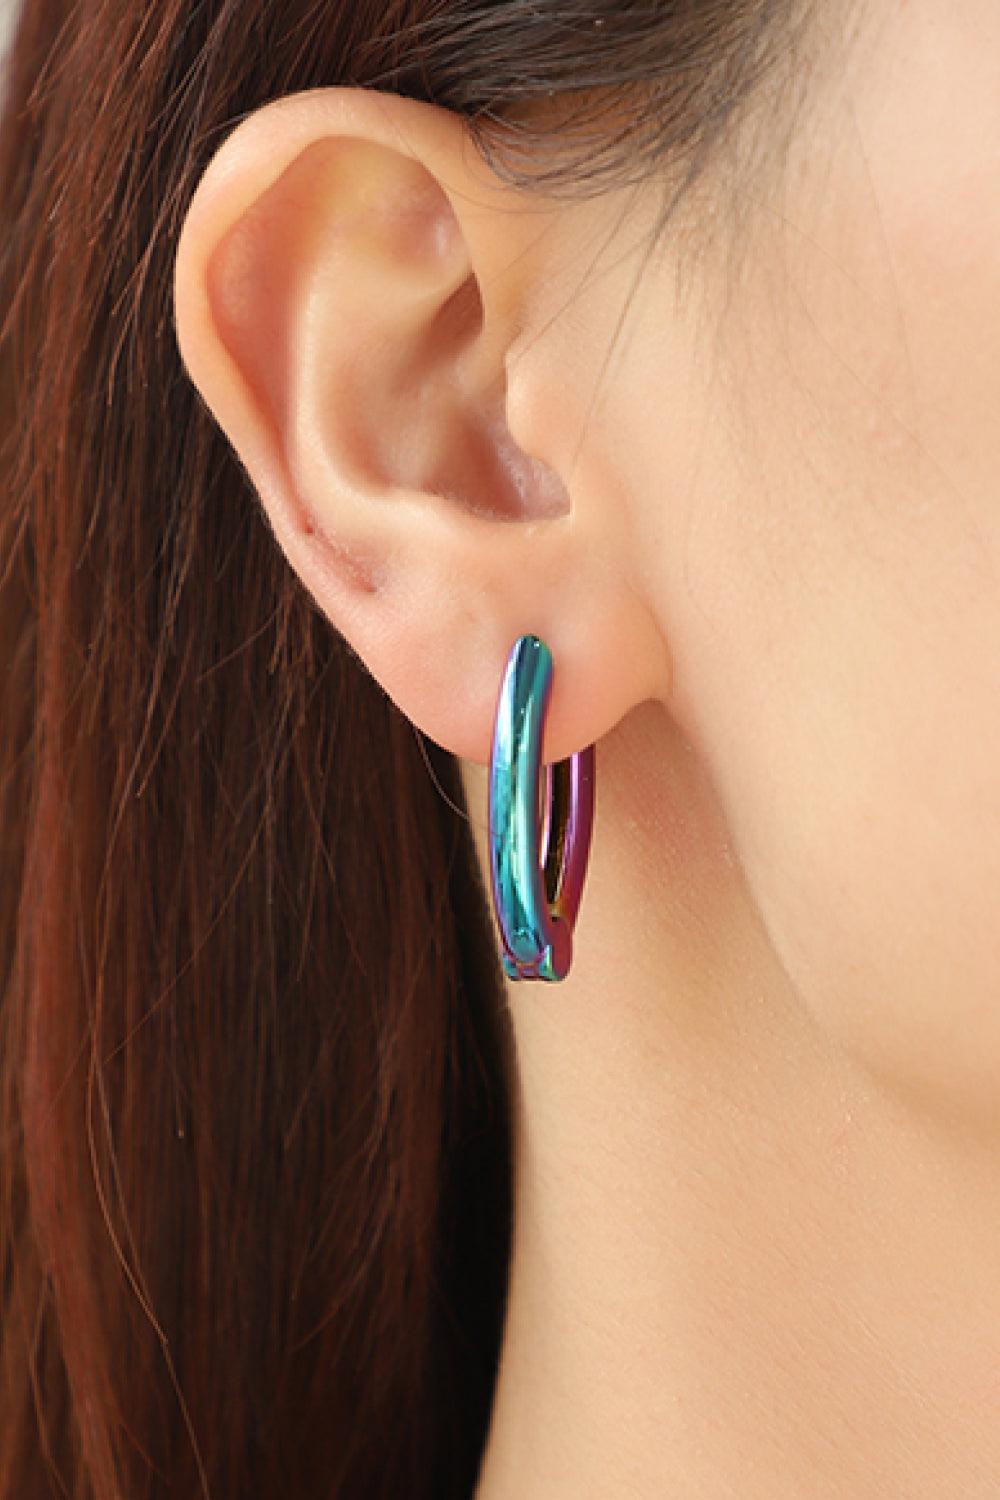 Bring It Home Multicolored Huggie Earrings - Trendha